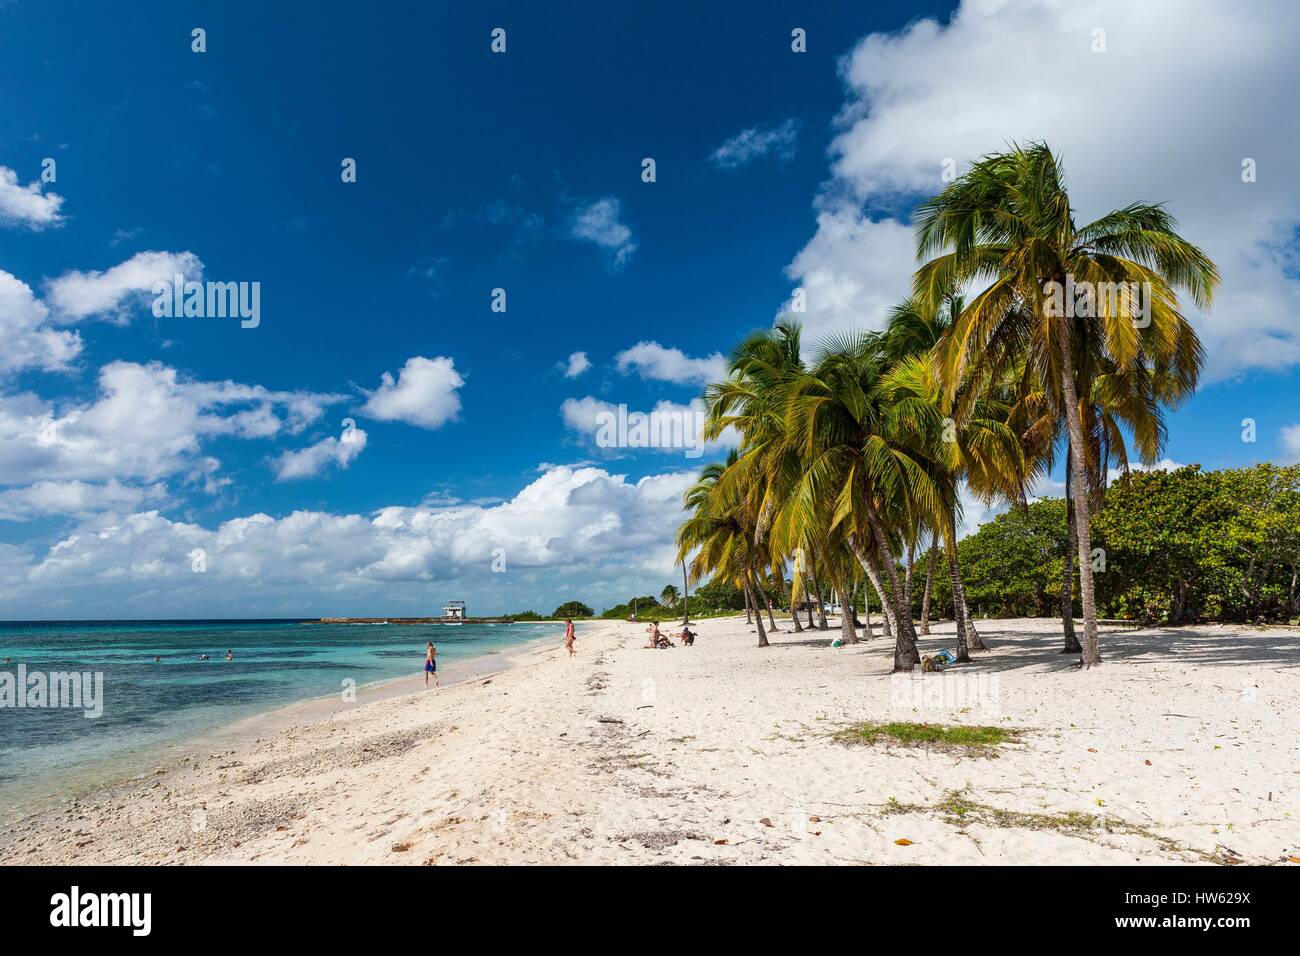 Cuba, province de Matanzas, la péninsule de Zapata, Baie des Cochons, Playa Giron Banque D'Images